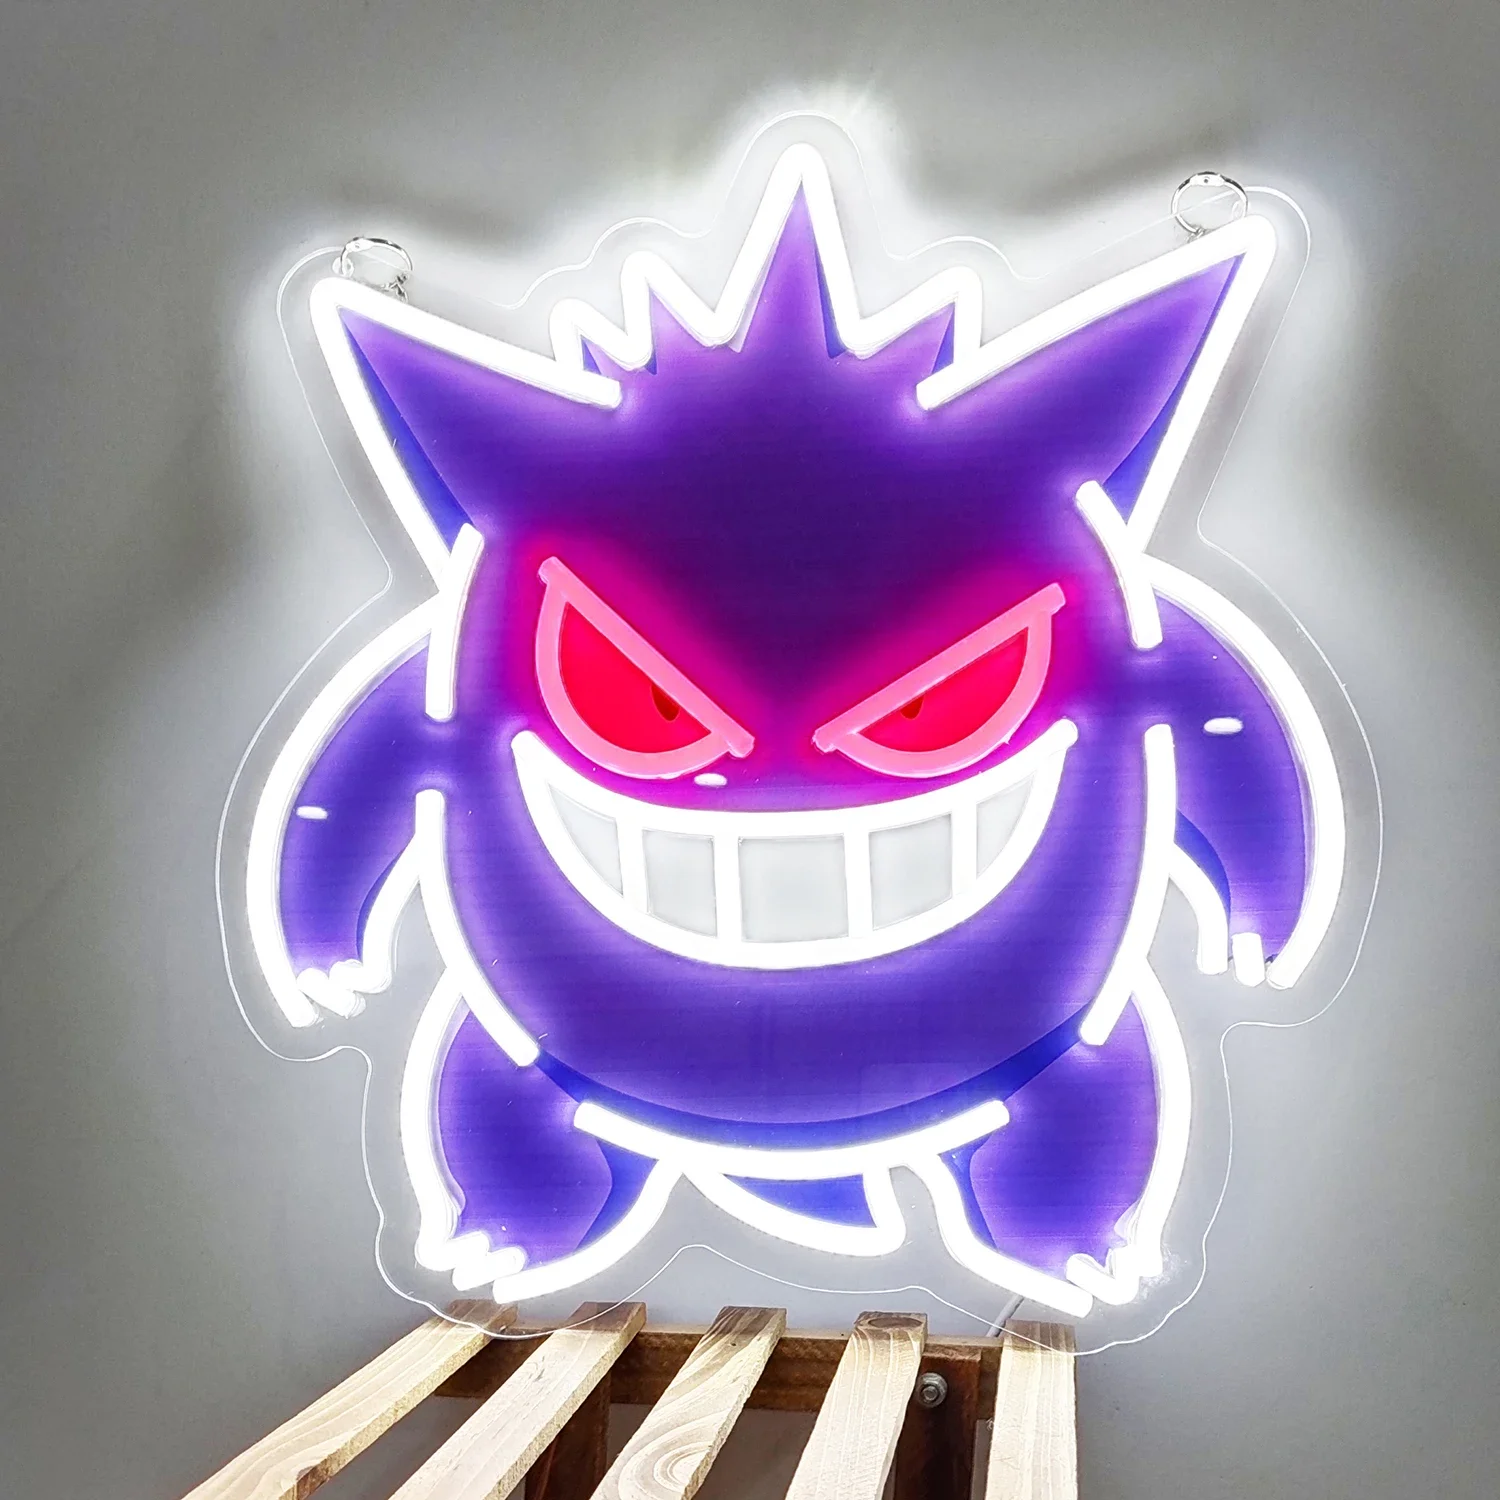 luz-led-de-neon-acrilica-personalizada-obra-de-arte-de-anime-pokemon-gengar-para-decoracion-del-hogar-festival-fiesta-bar-hotel-salon-tienda-de-negocios-etc